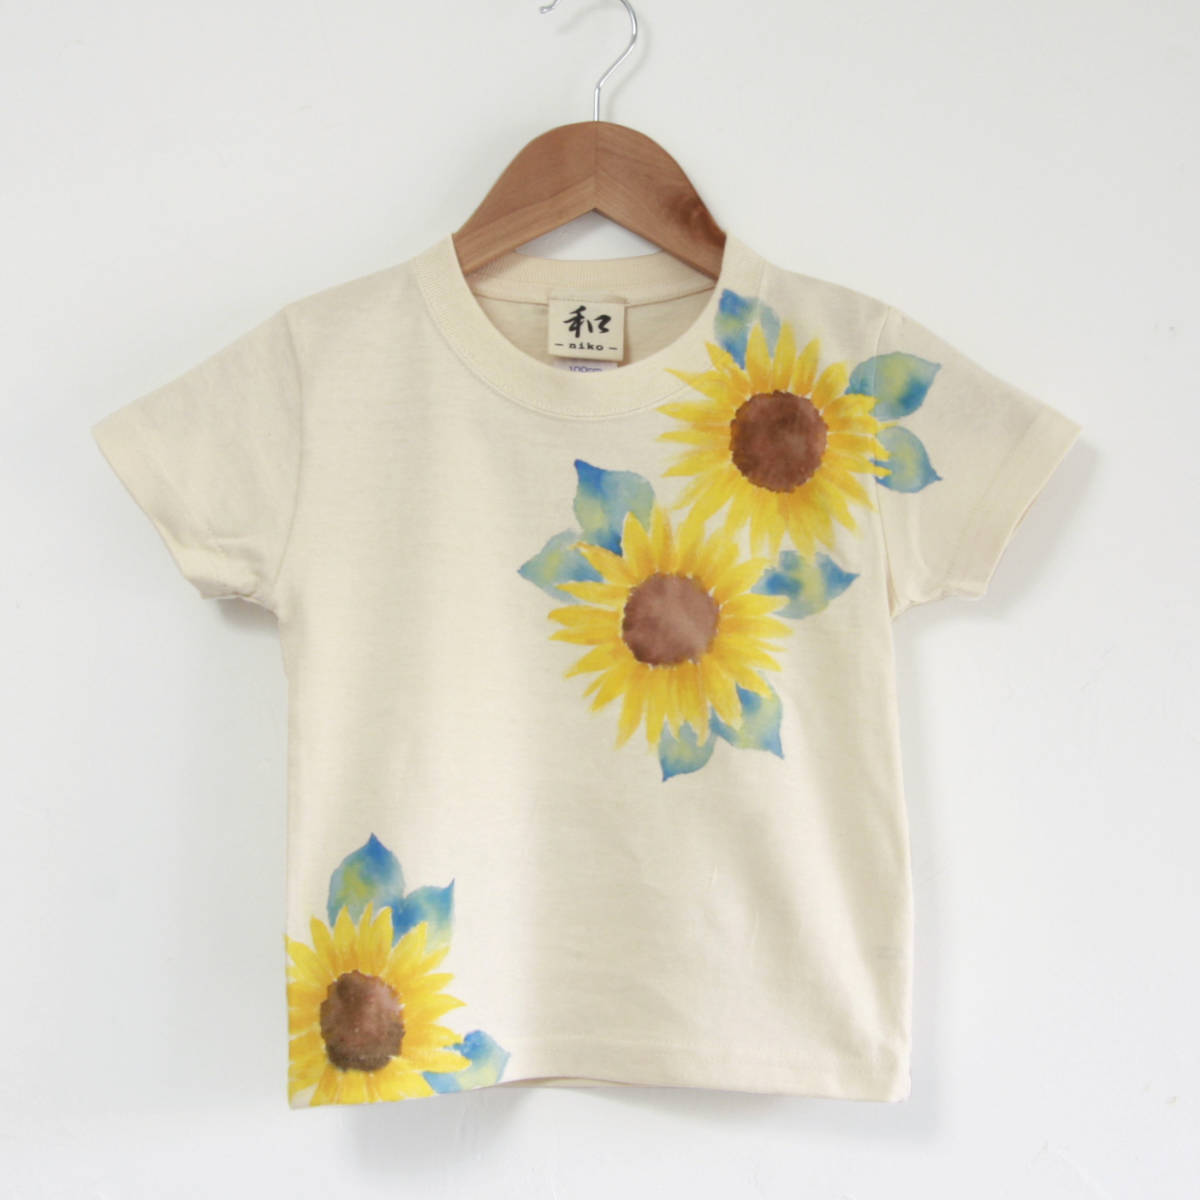 아동복, 어린이 티셔츠, 사이즈 150, 자연스러운, 해바라기 패턴, 수공, 손으로 그린 티셔츠, 꽃무늬, 여름, 선물, 상의, 반소매 티셔츠, 150(145~154cm)